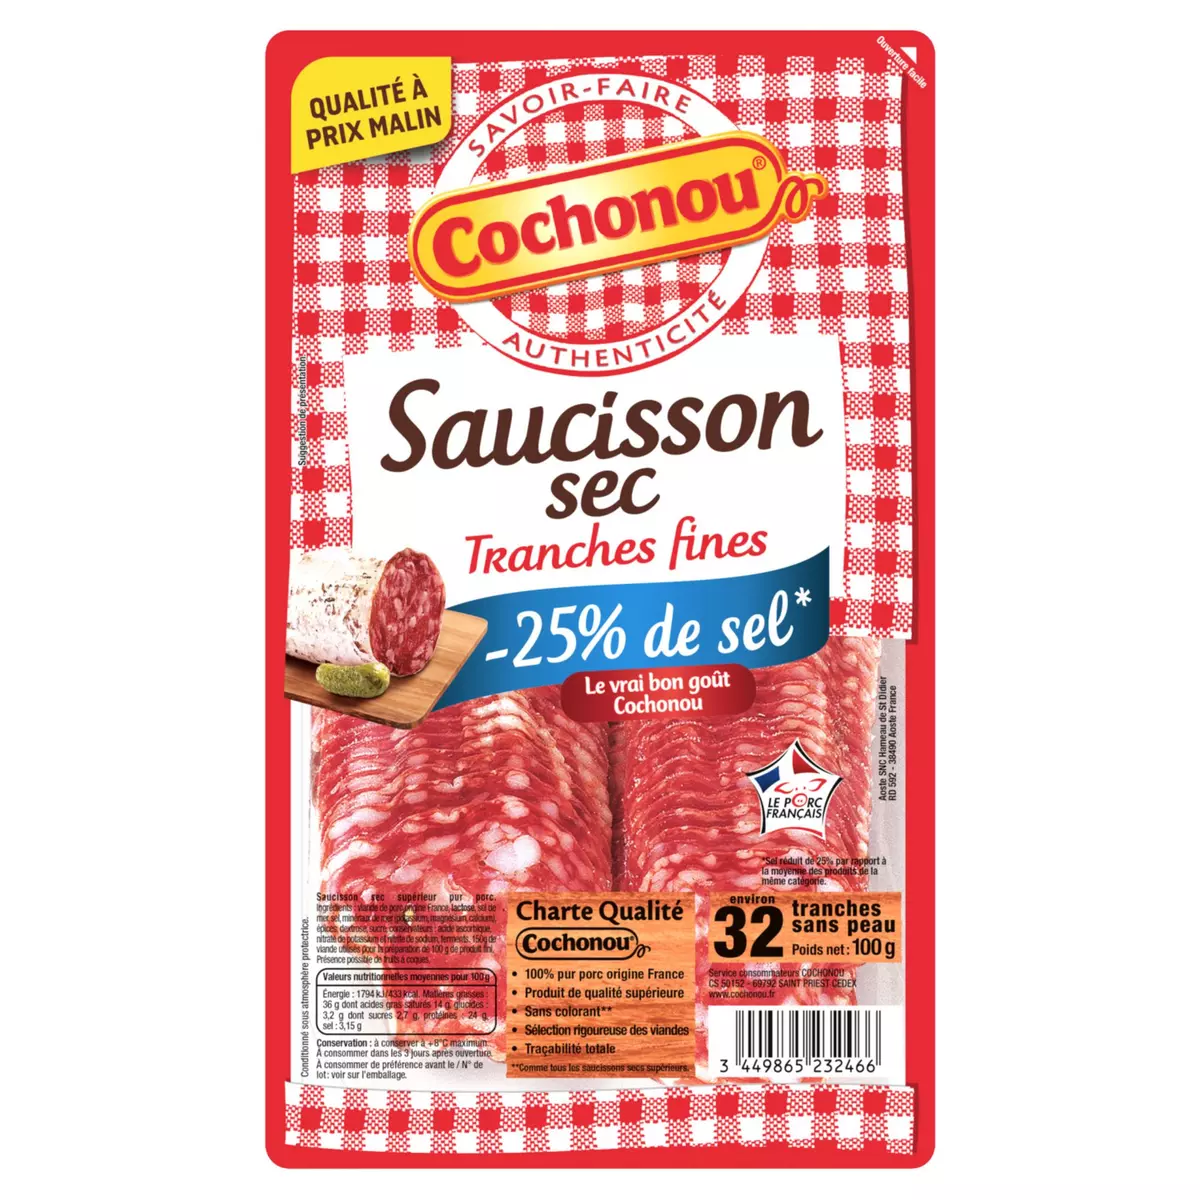 COCHONOU Saucisson sec tranches fines réduit en sel 32 tranches 100g